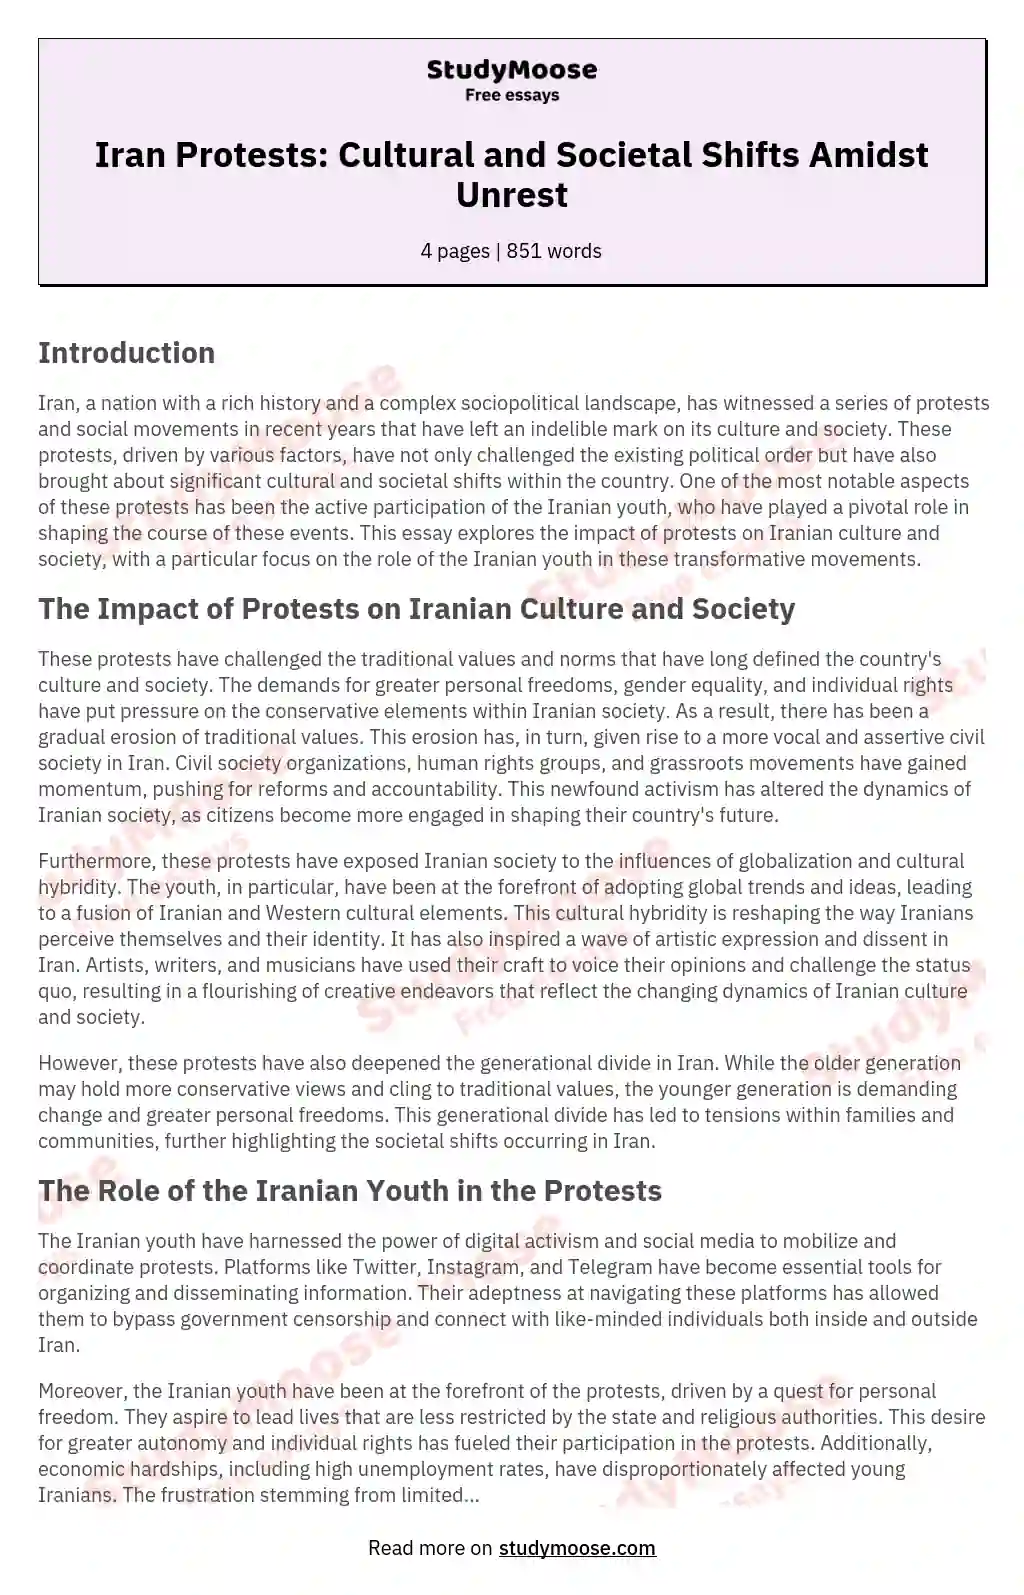 Iran Protests: Cultural and Societal Shifts Amidst Unrest essay